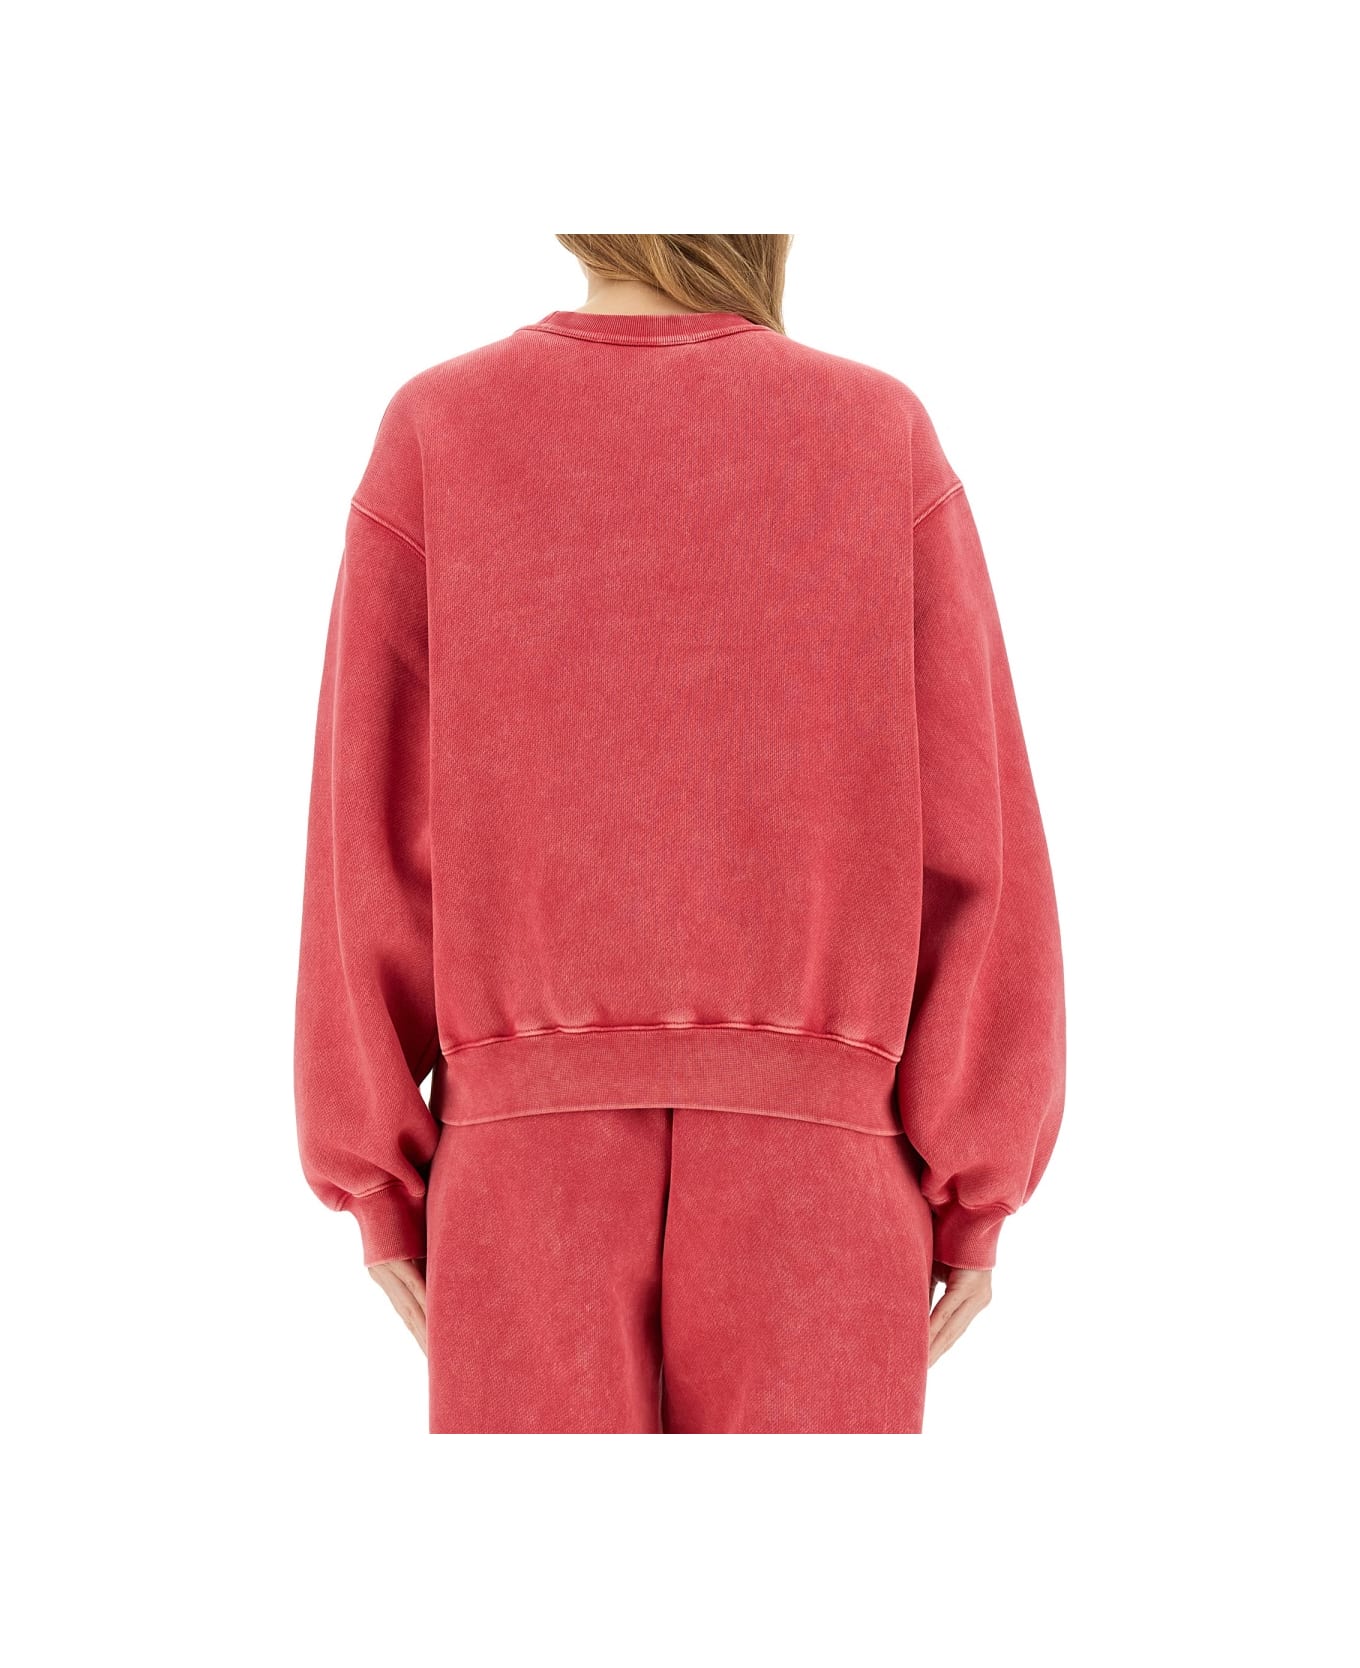 Alexander Wang Essential Sweatshirt - A Soft Cherry